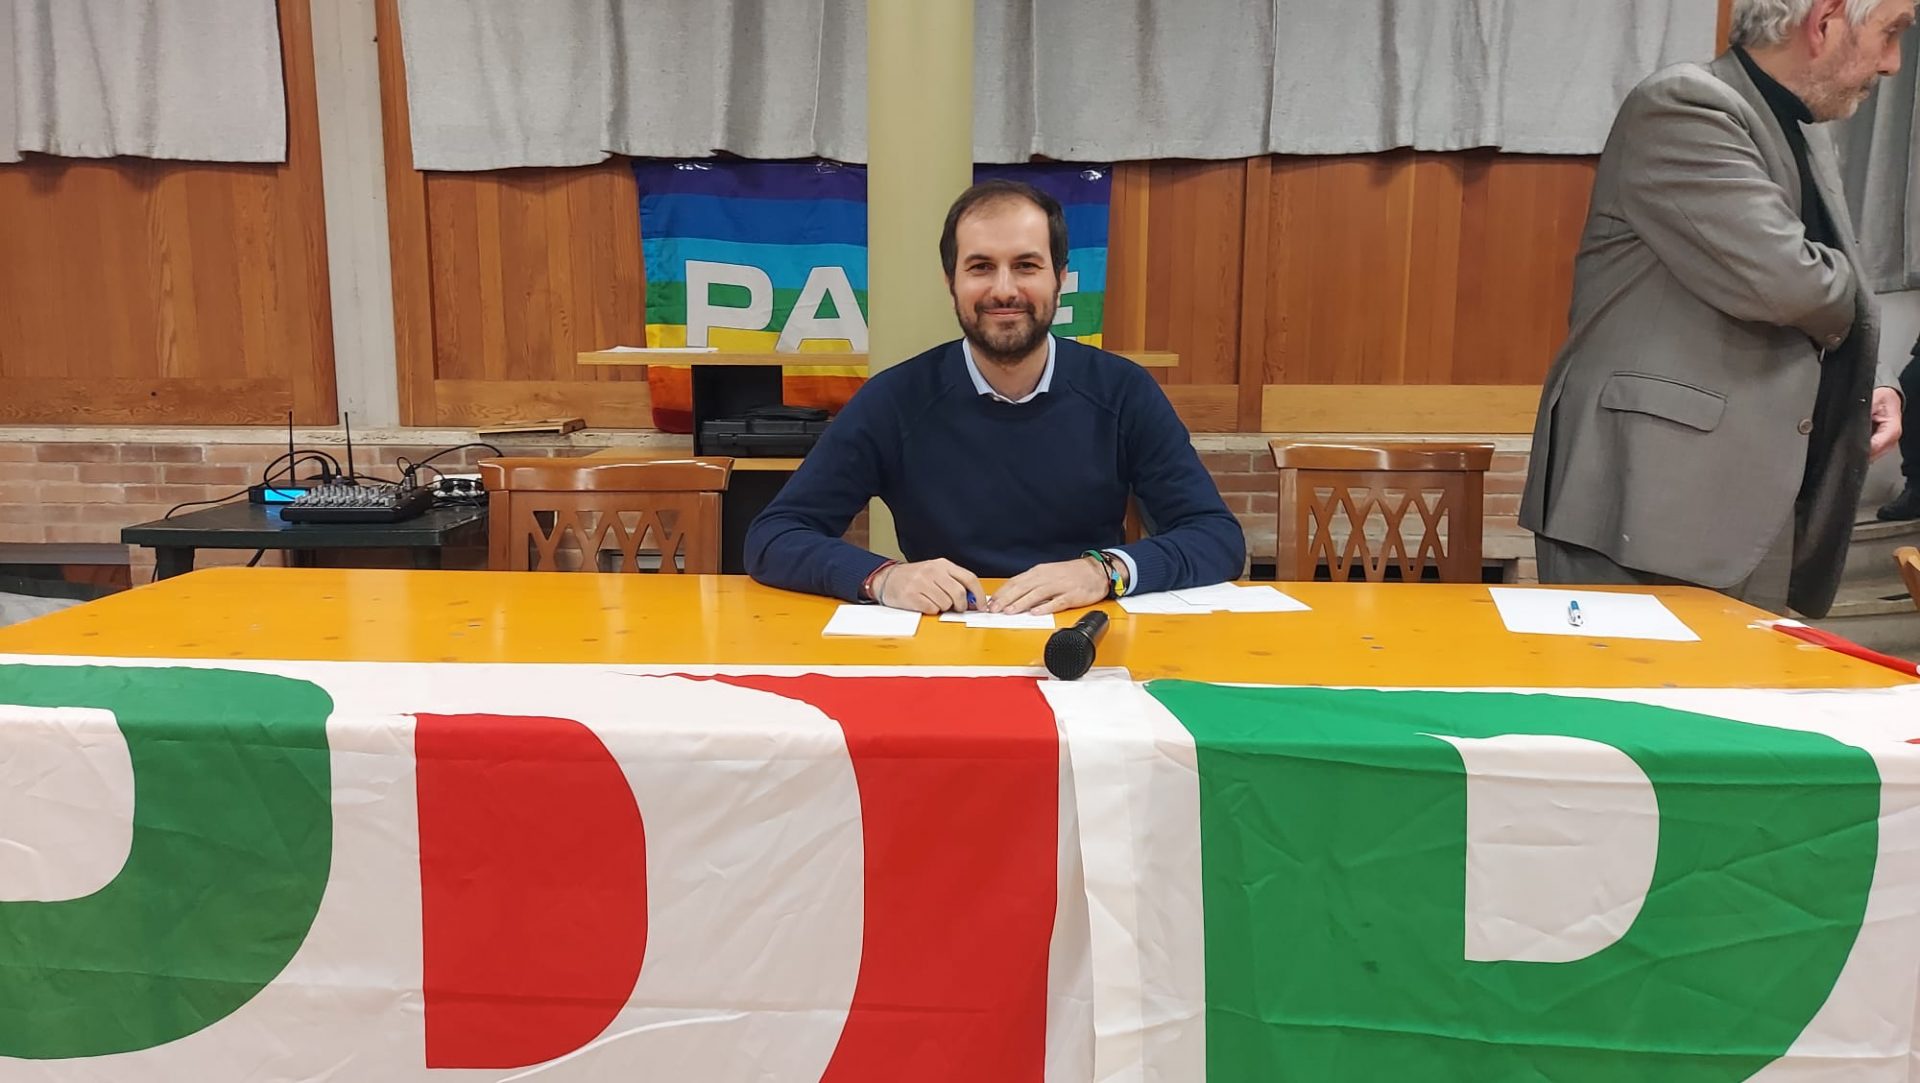 Pd di Siena, primo giorno per il commissario Sarracino: "Trovato un partito messo meglio di quanto pensassi"